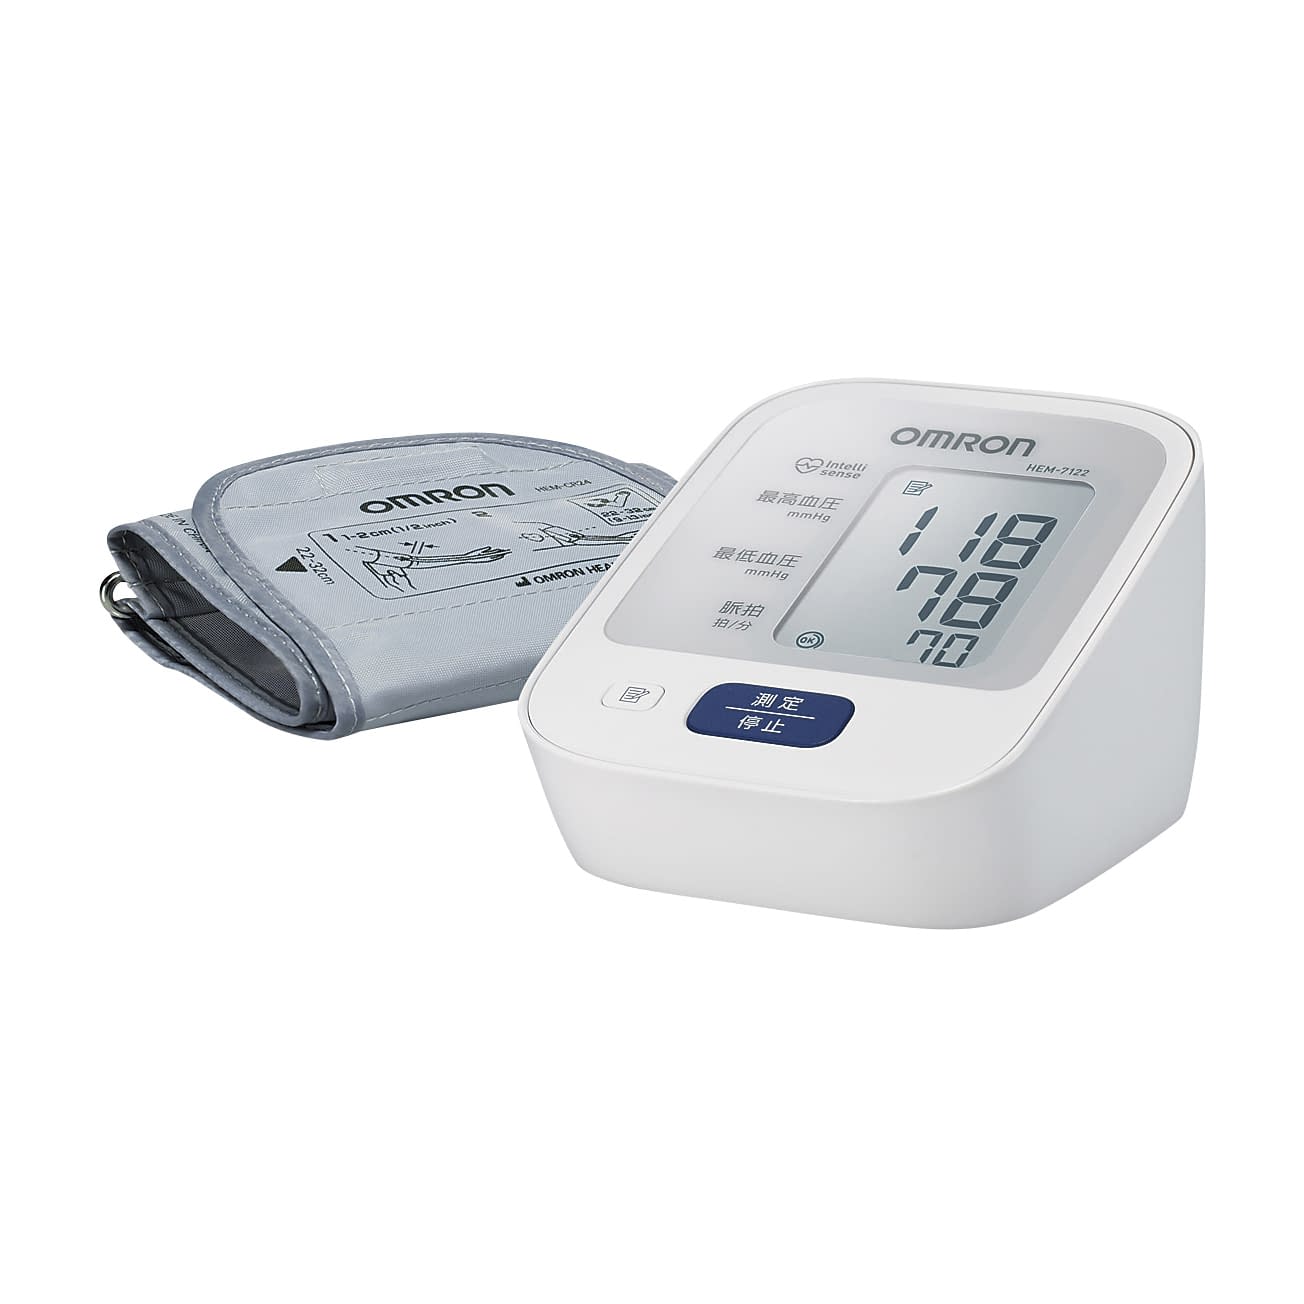 (24-4164-00)デジタル自動血圧計 HEM-7122 ﾃﾞｼﾞﾀﾙｼﾞﾄﾞｳｹﾂｱﾂｹｲ(フクダコーリン)【1台単位】【2019年カタログ商品】